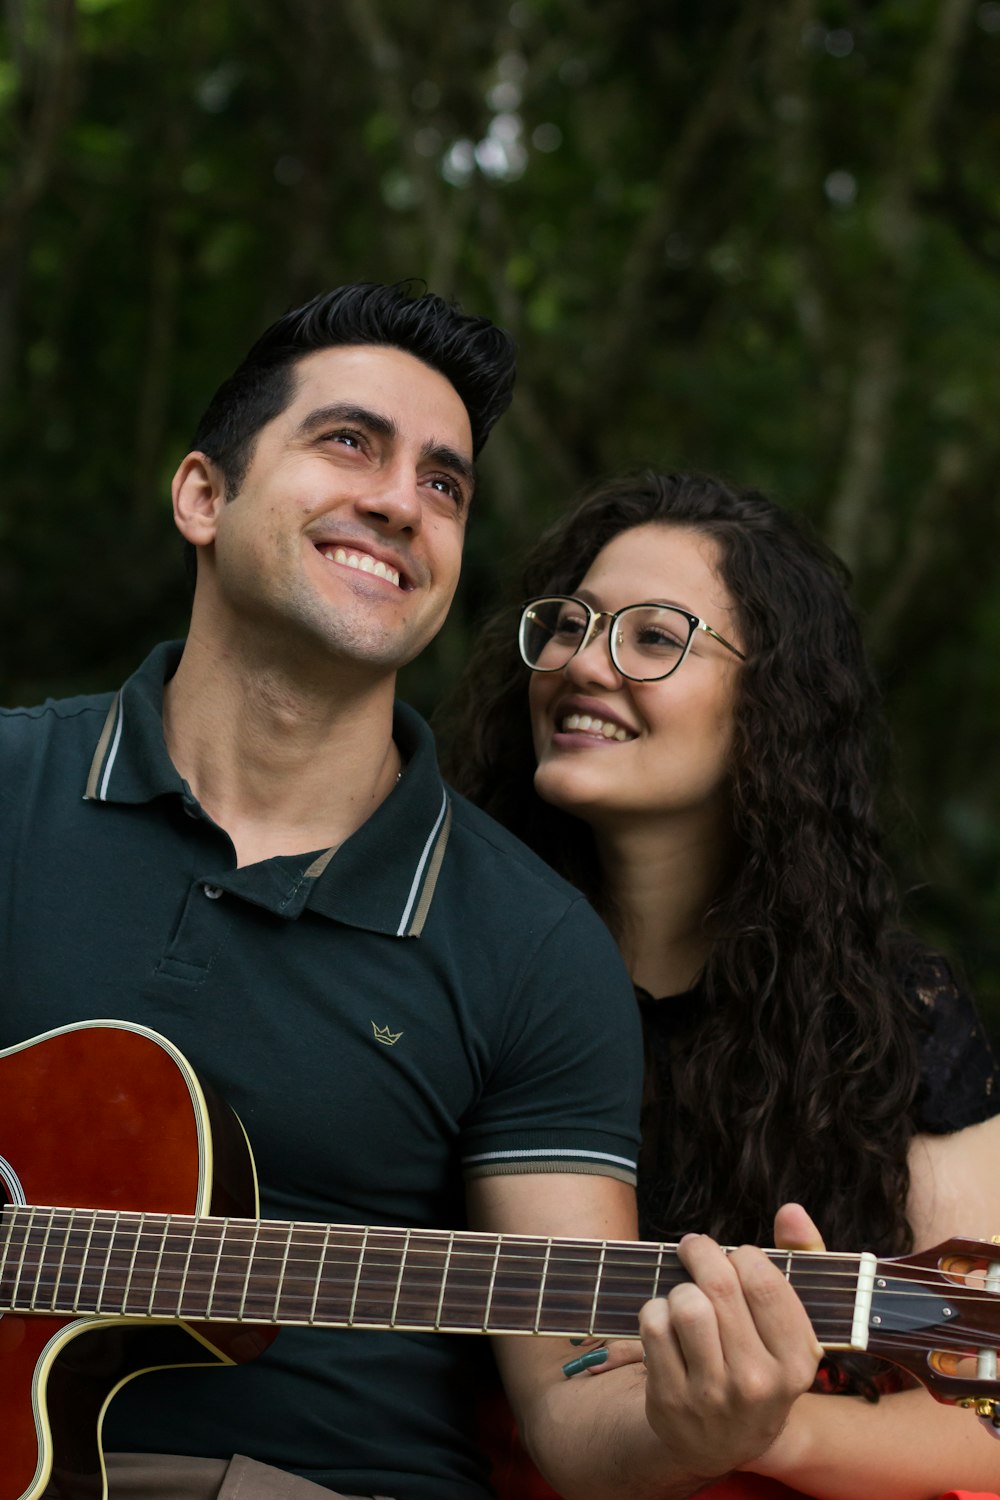 Fotografía de enfoque selectivo de mujer sonriente al lado de hombre que toca la guitarra durante el día